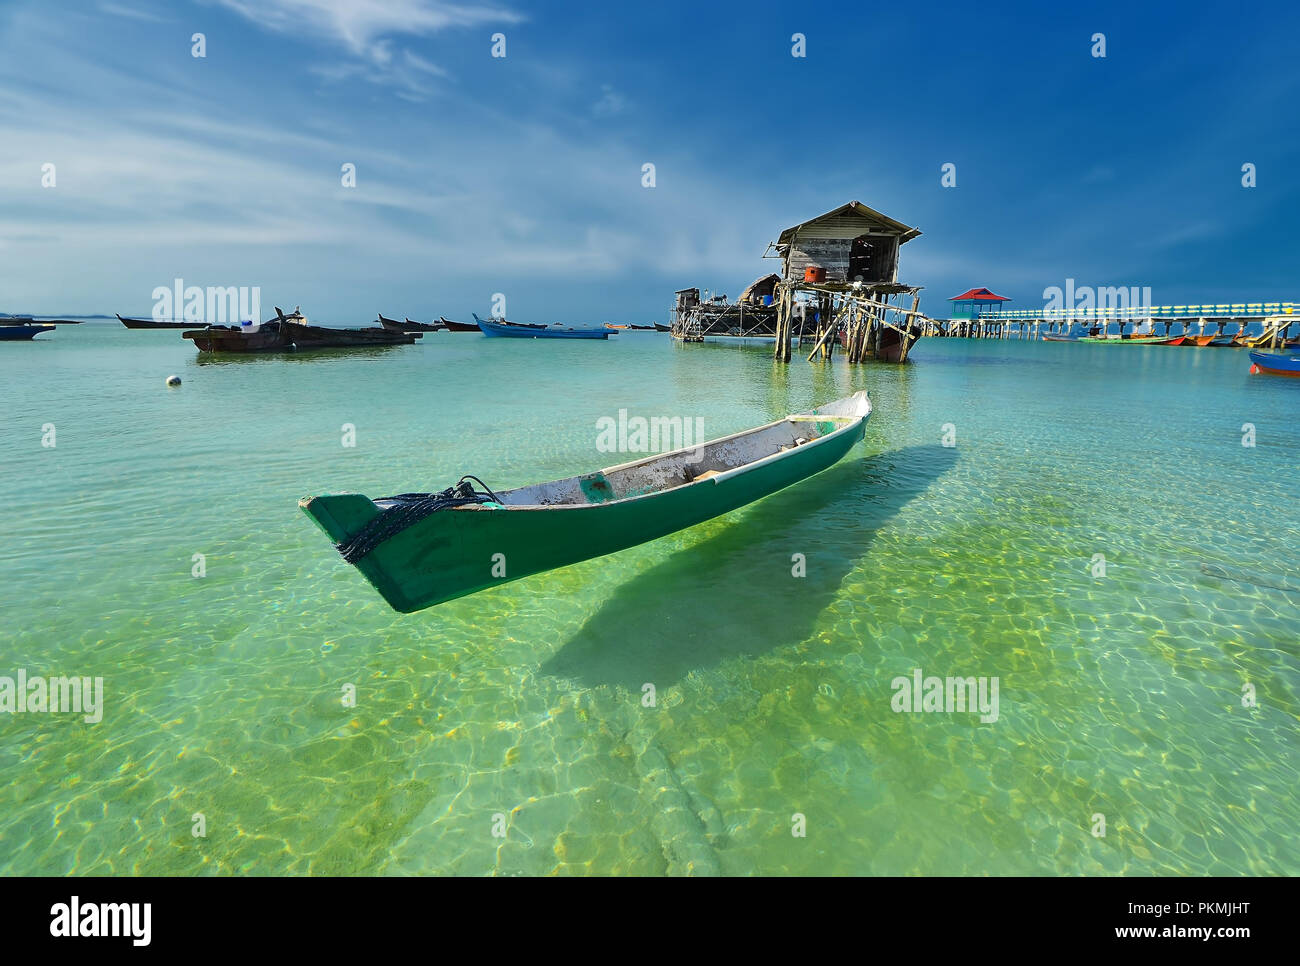 Wunderbare Landschaftsfotos auf Batam Bintan Island Indonesien Stockfoto